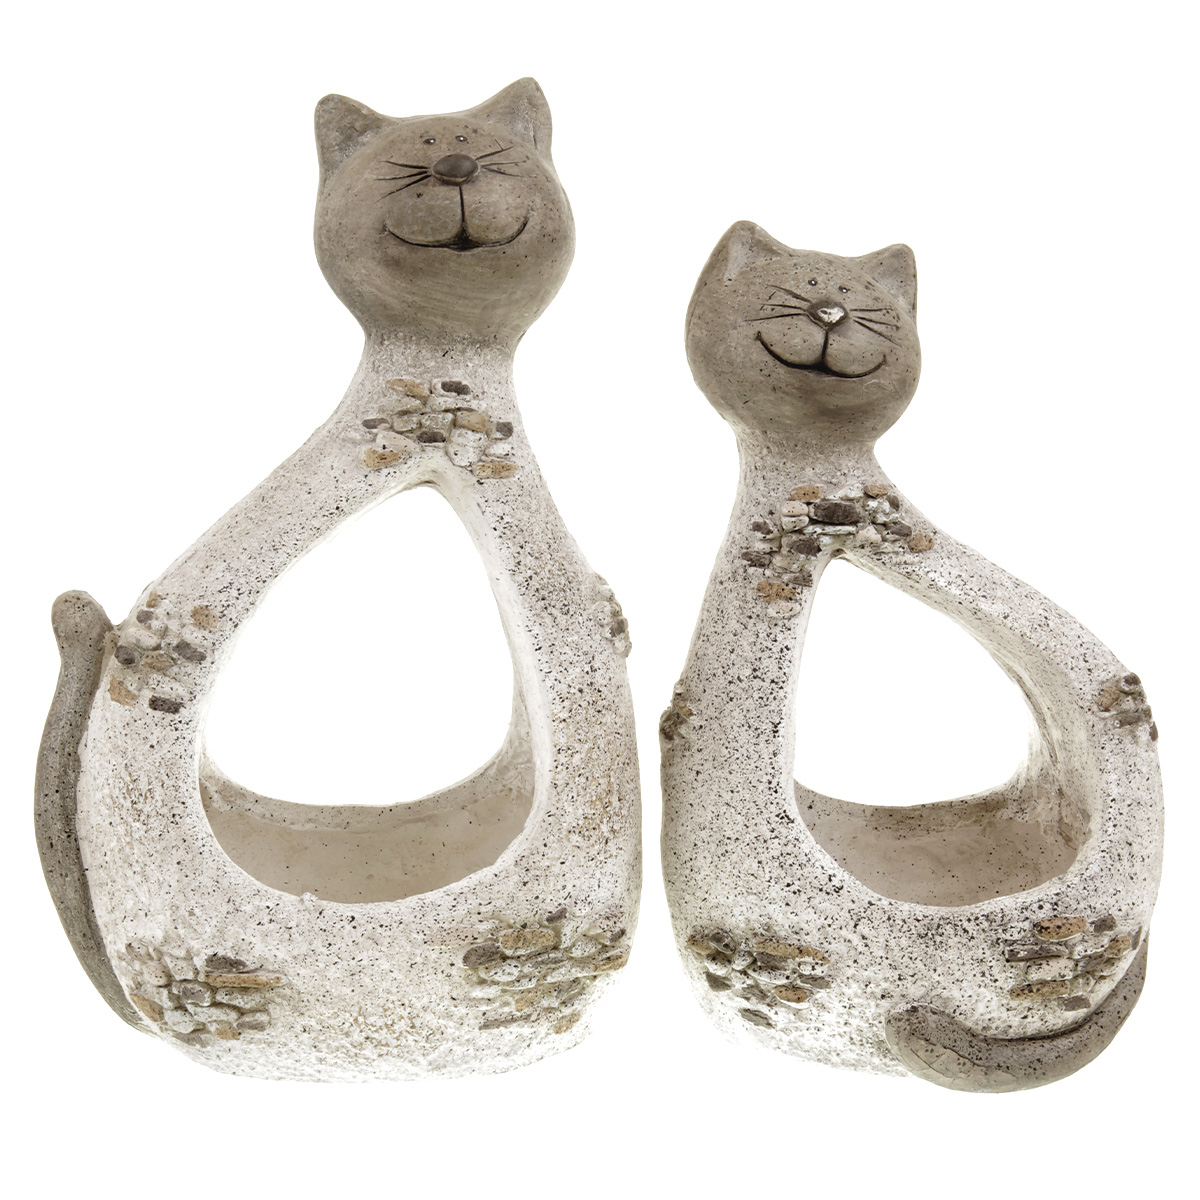 Obal na sukulenty z magneziové keramiky, ve tvaru kočky.